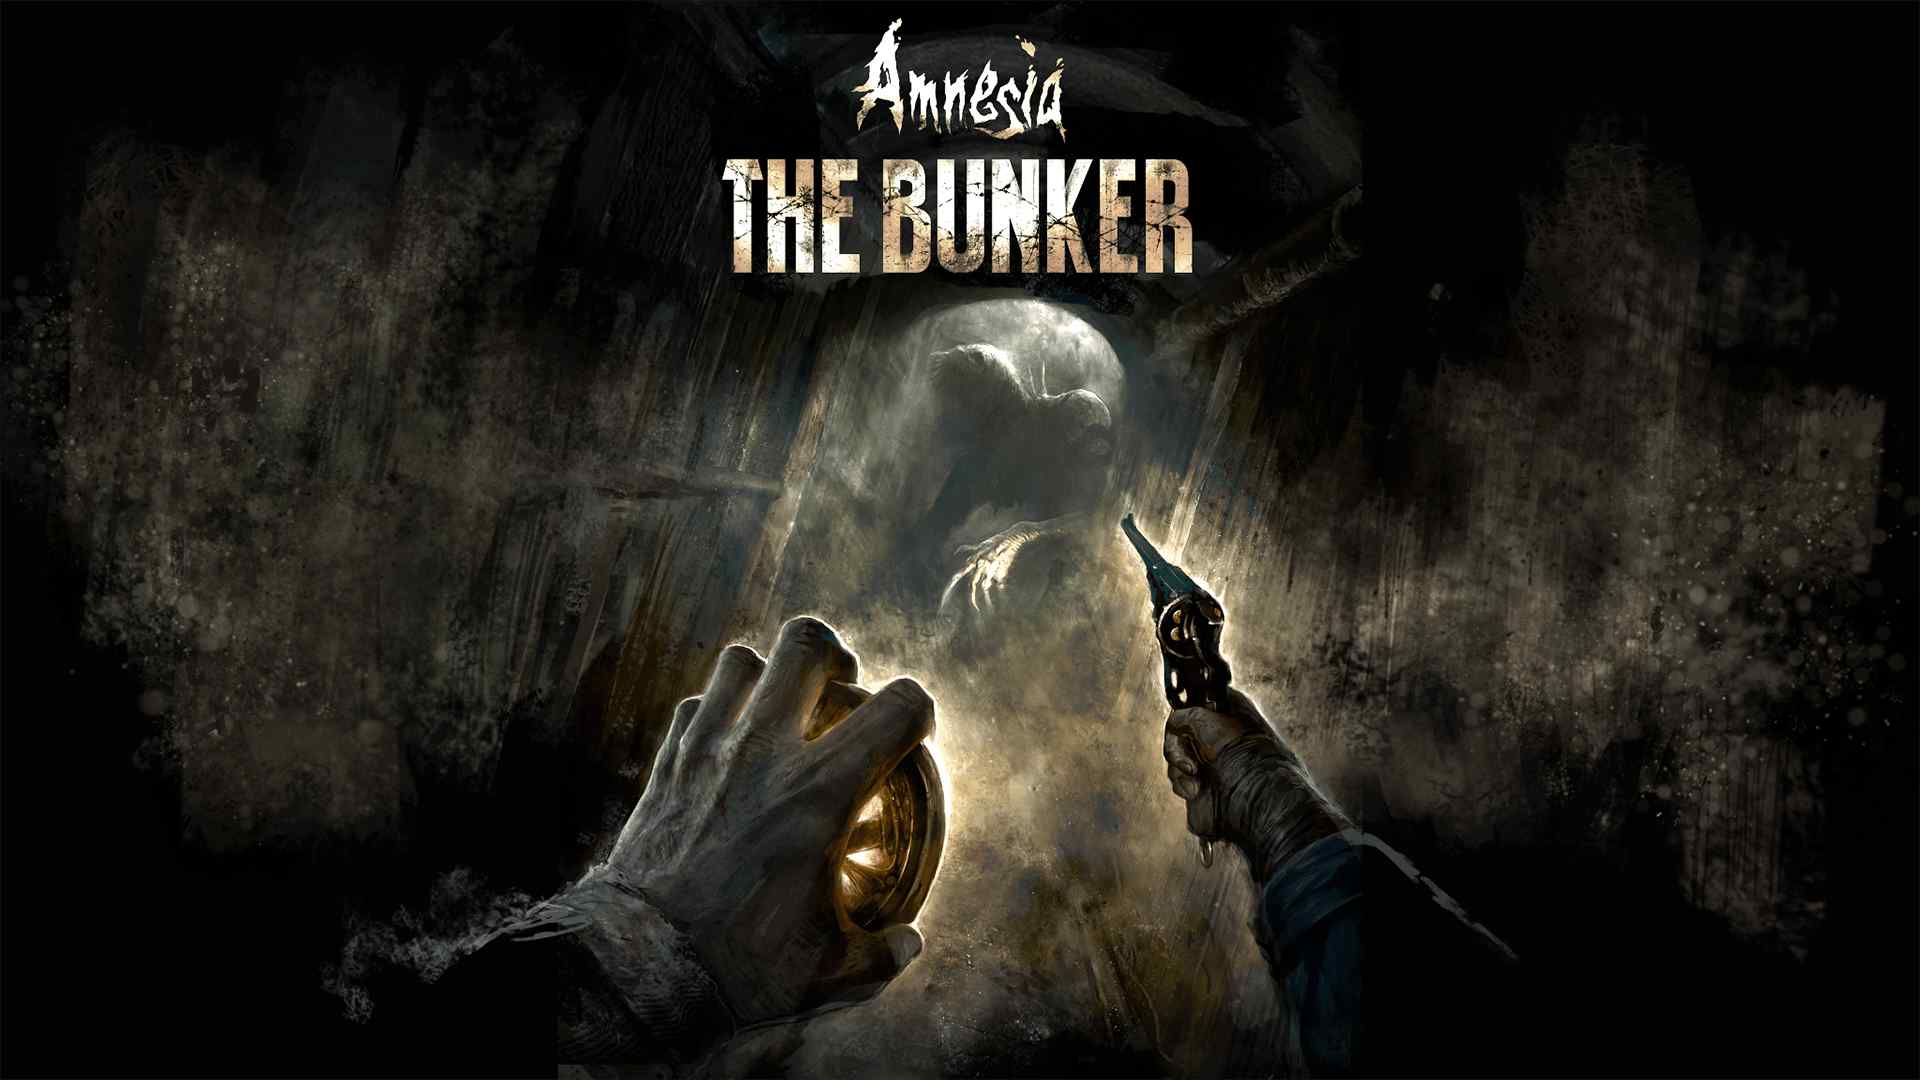 Utvecklarna av Amnesia: The Bunker har släppt en ny uppdatering som åtgärdar ett antal buggar och fel i spelet